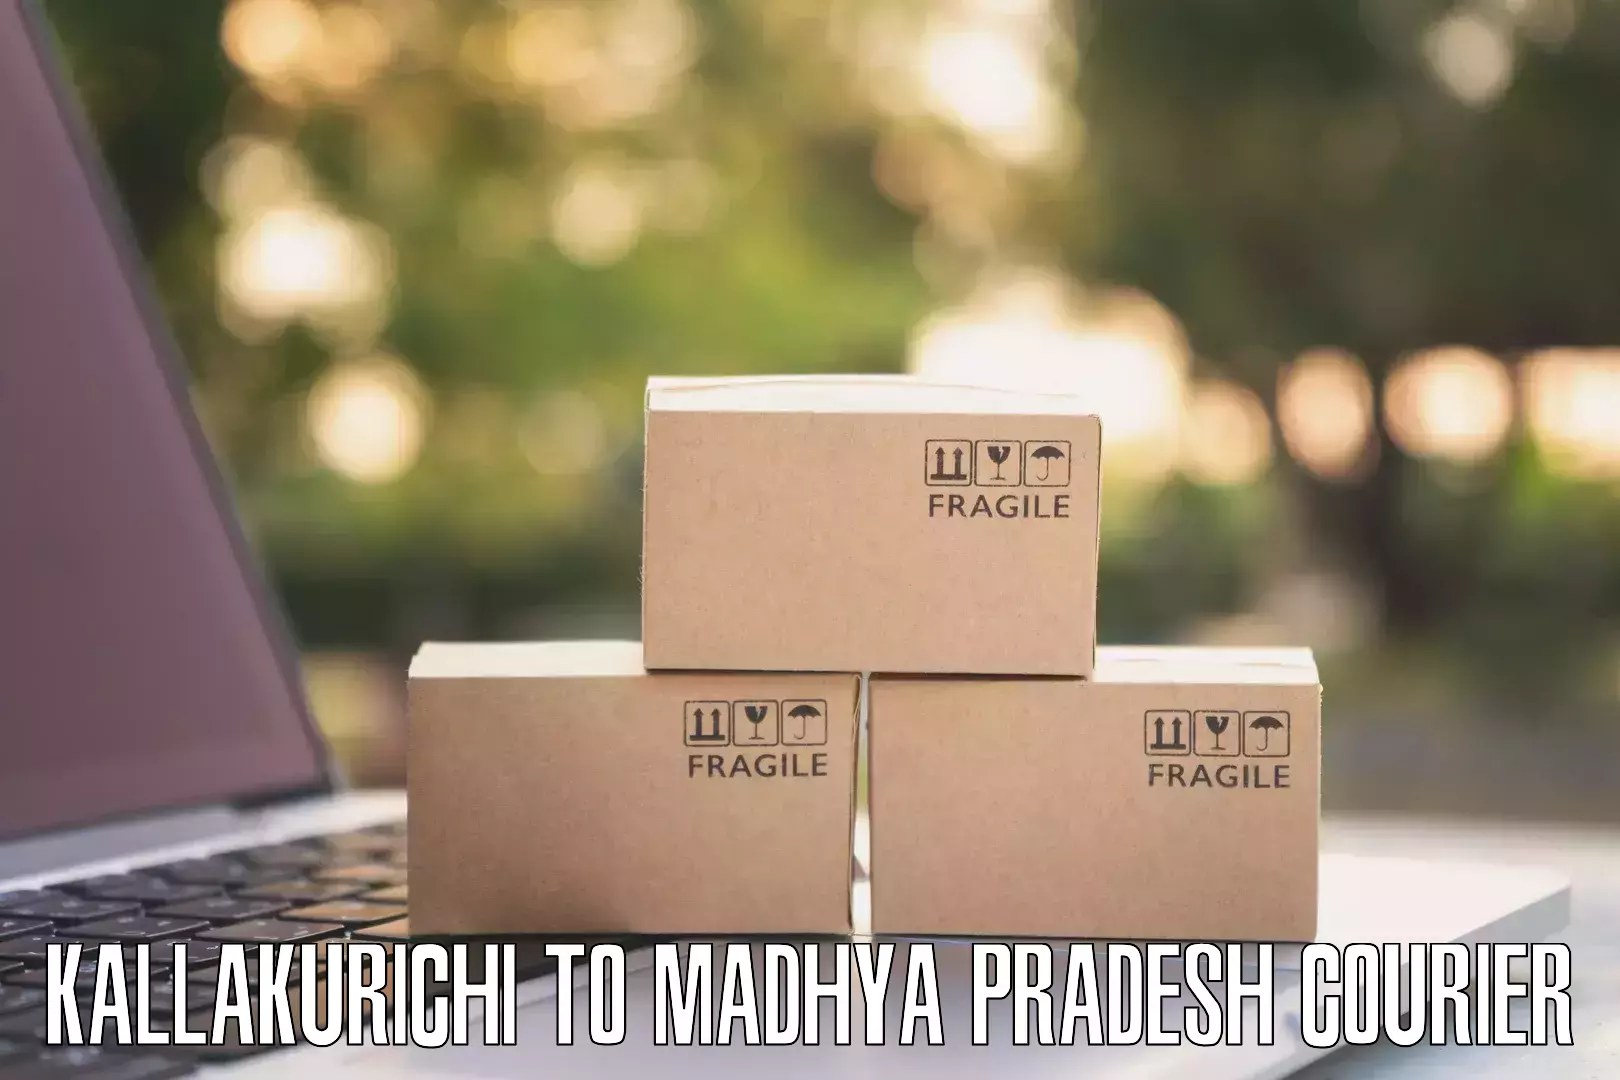 24-hour delivery options Kallakurichi to Amla